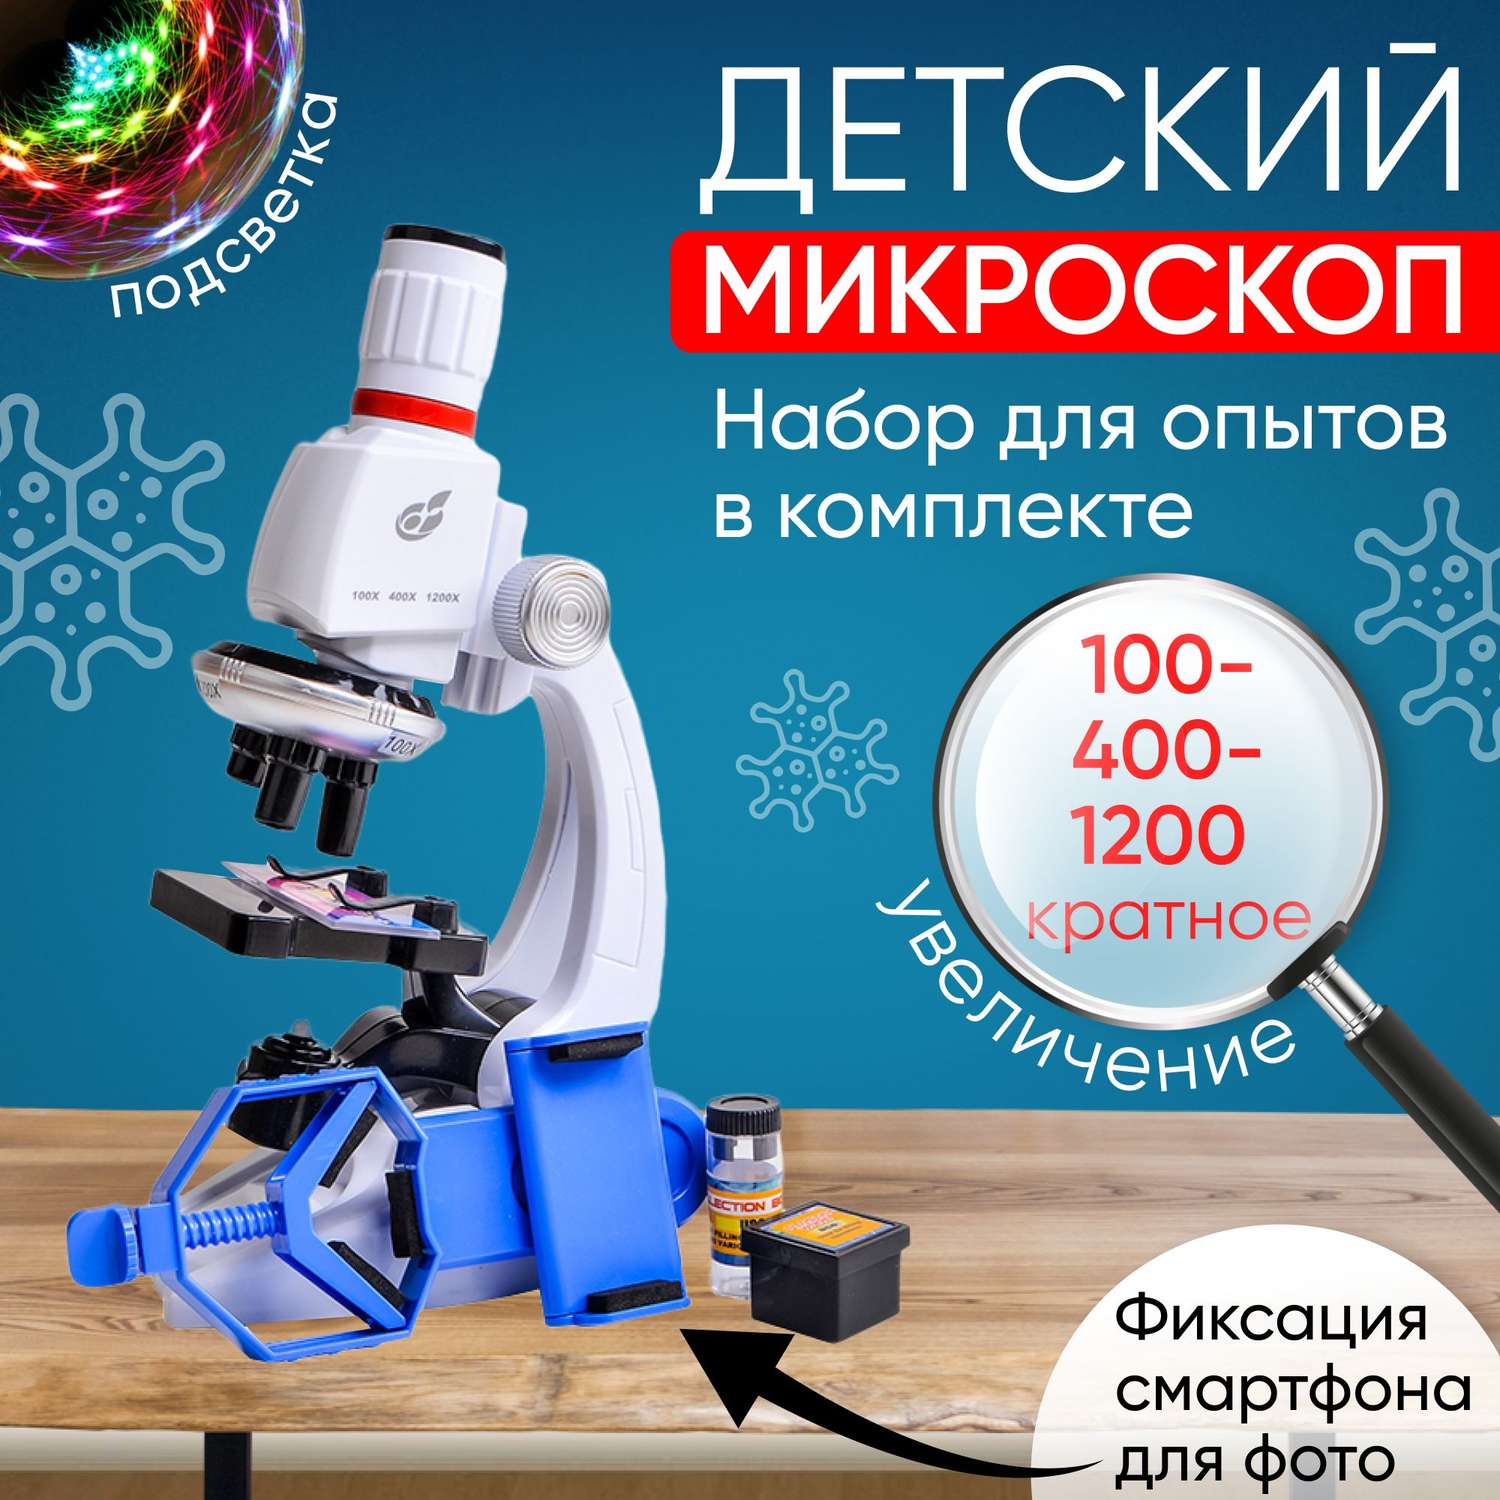 Детский микроскоп MagicStyle набор для опытов с держателем для смартфона и подсветкой - фото 1